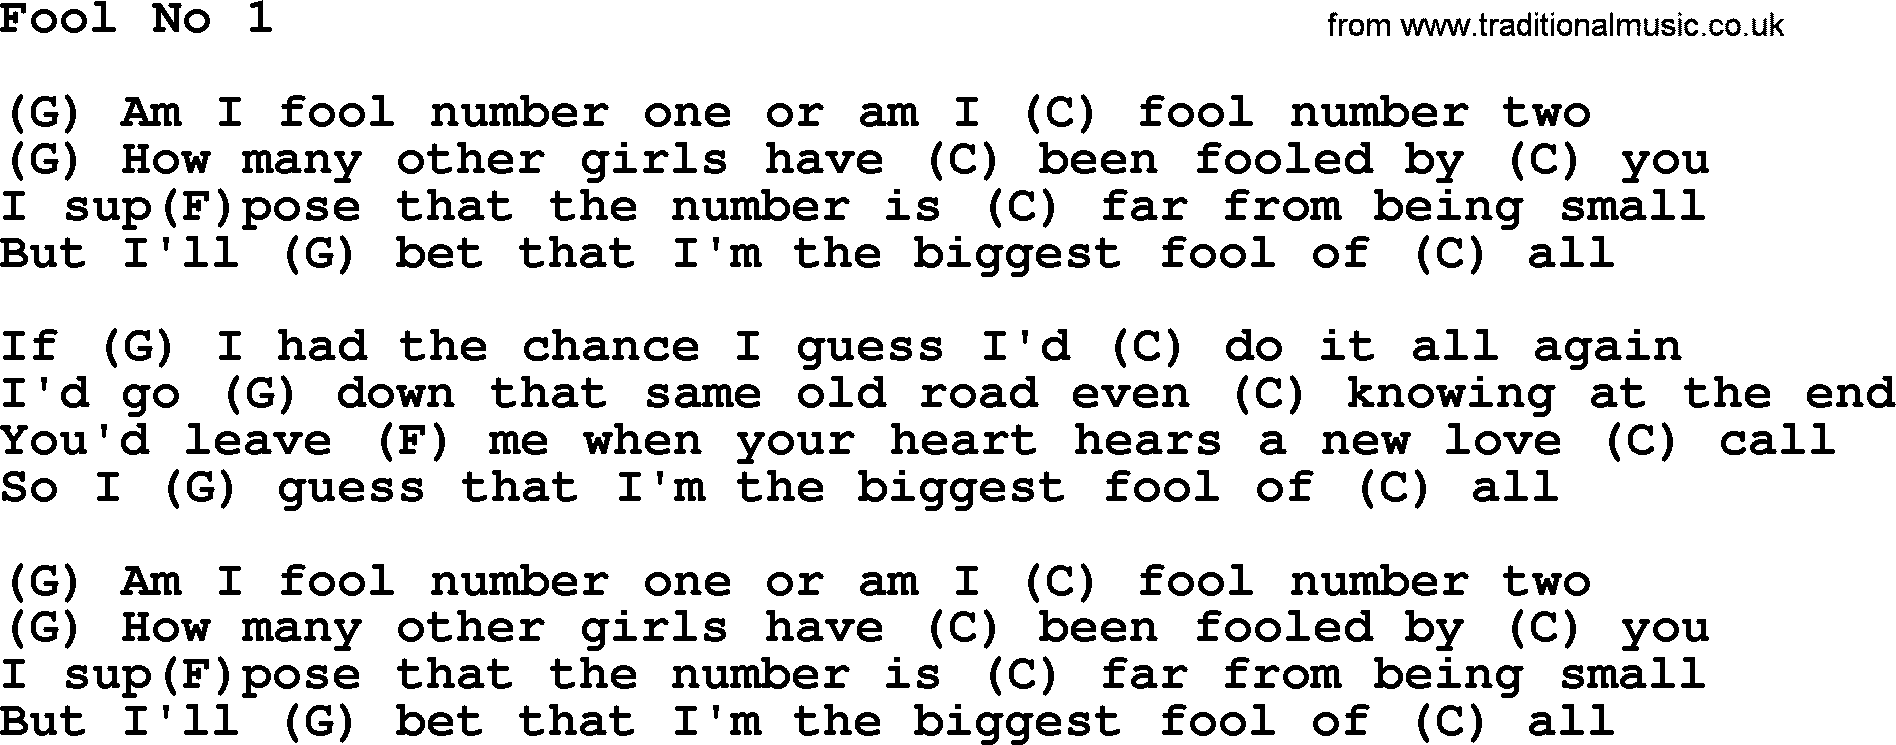 Loretta Lynn song: Fool No 1 lyrics and chords